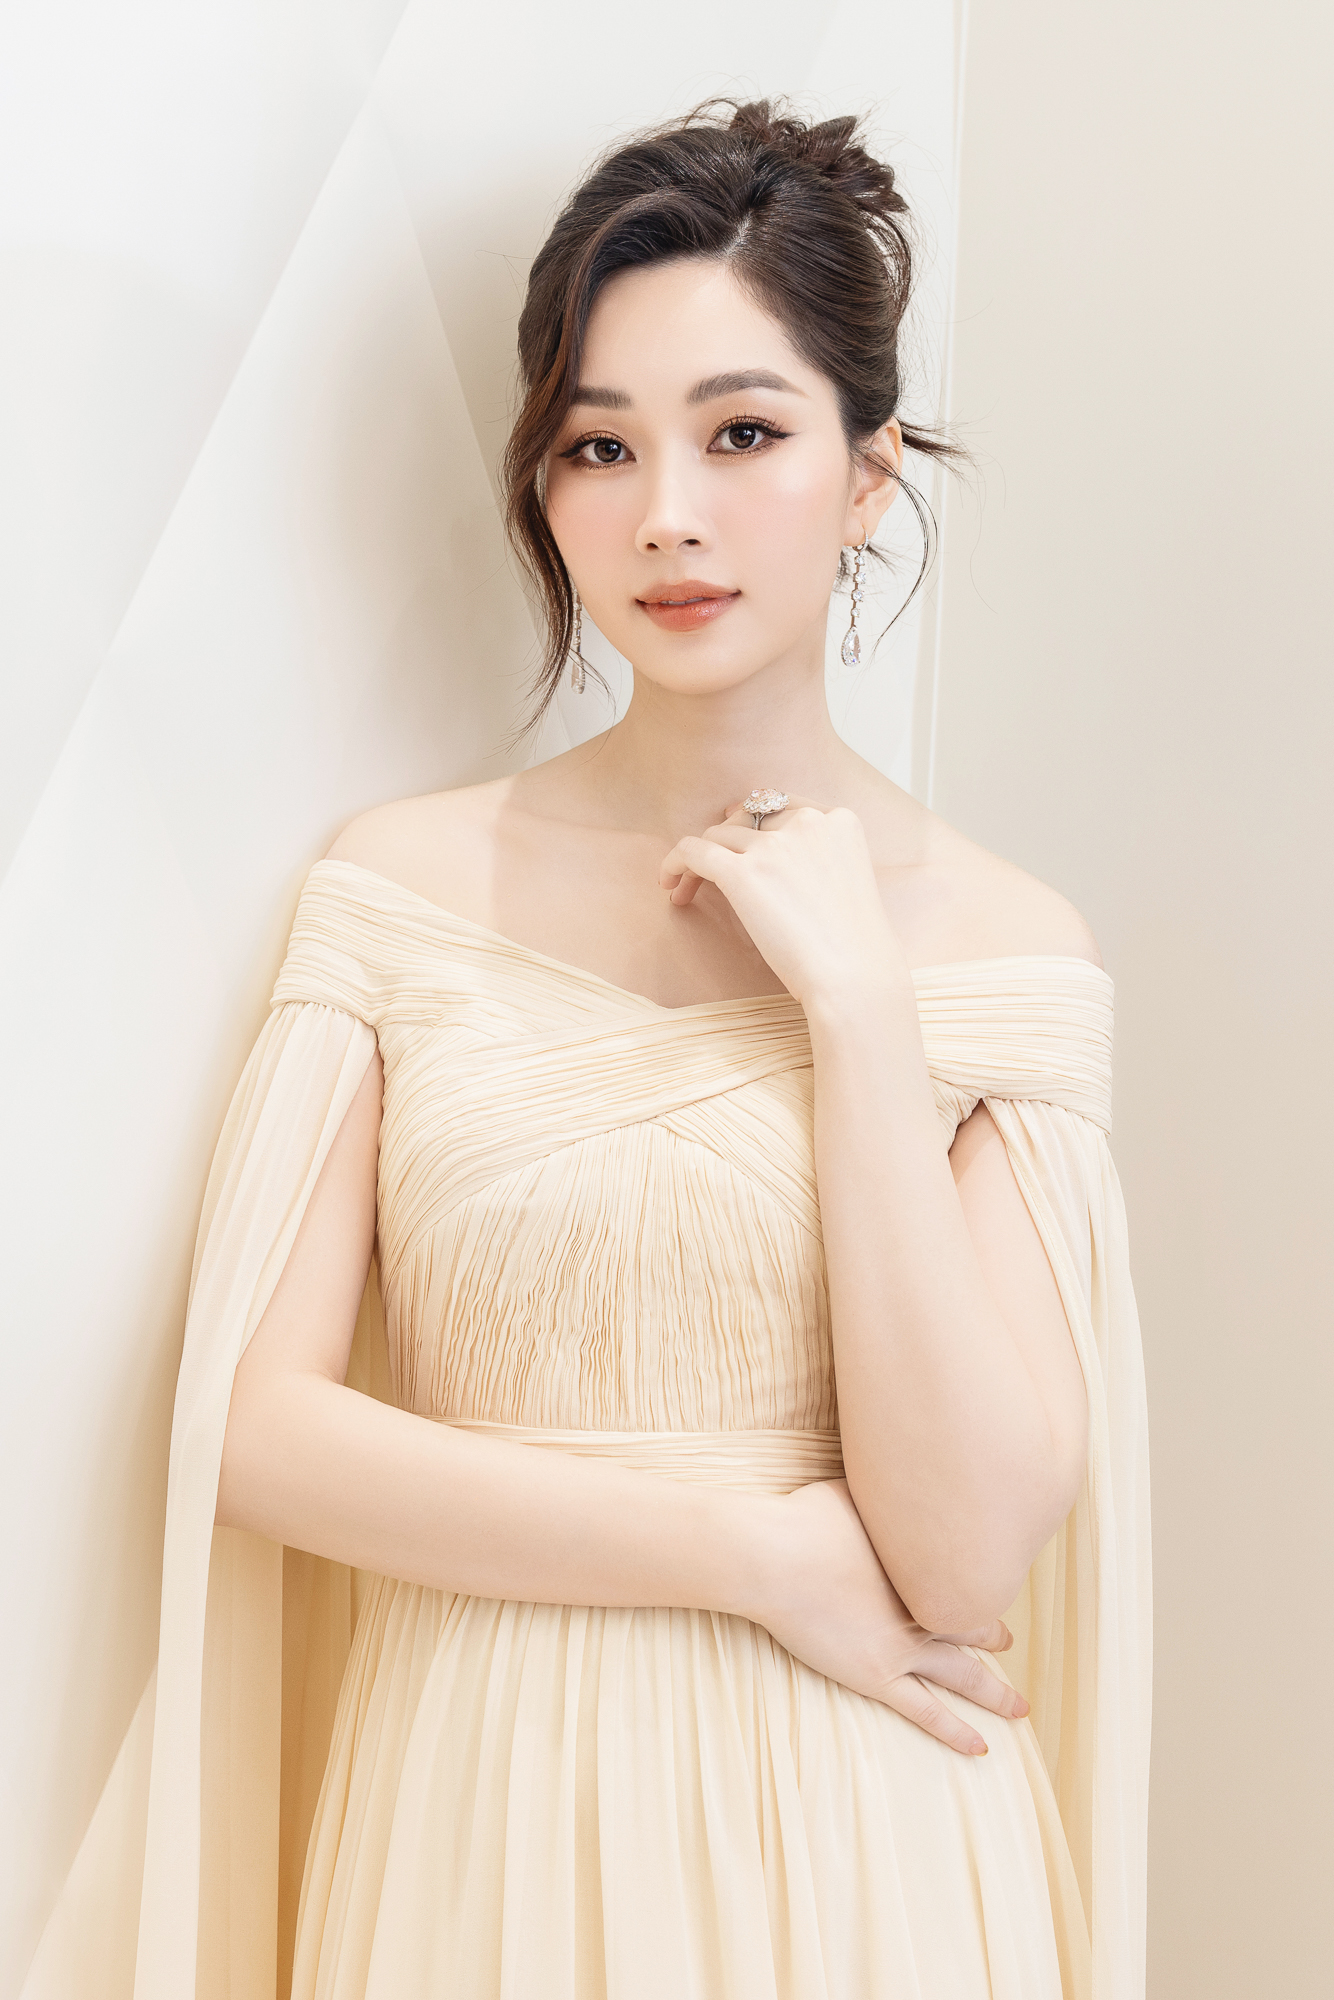 Hoa hậu Đặng Thu Thảo khoe sắc với trang sức hơn trăm tỉ đồng